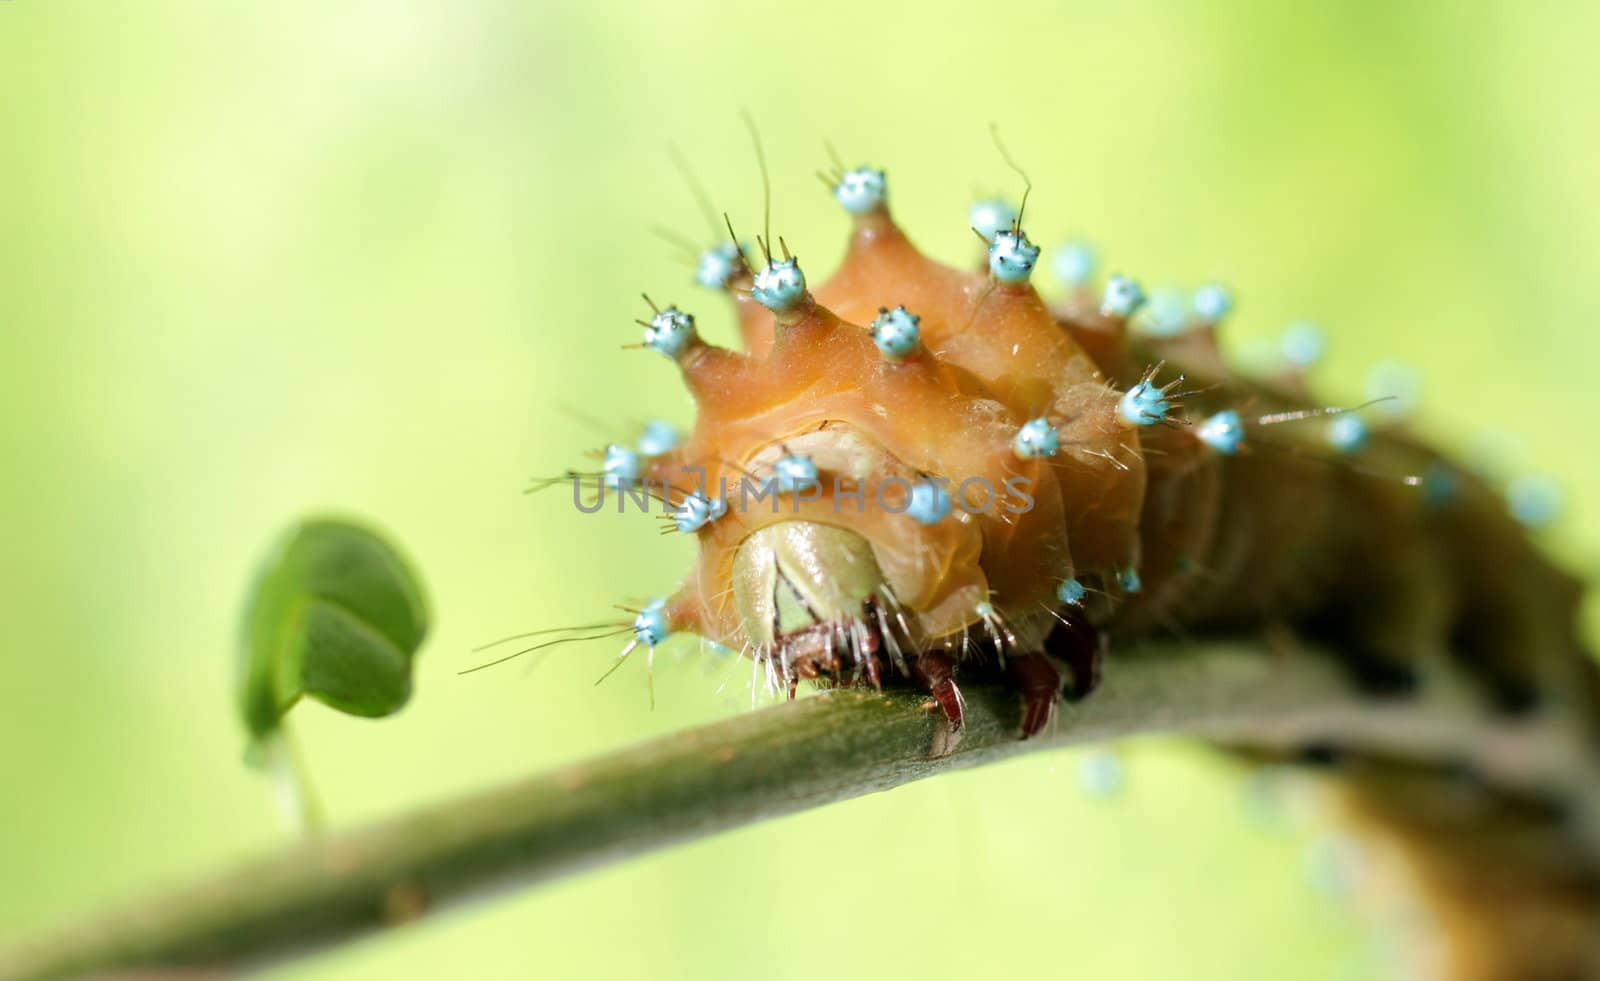 Caterpillar on branch  by ichip